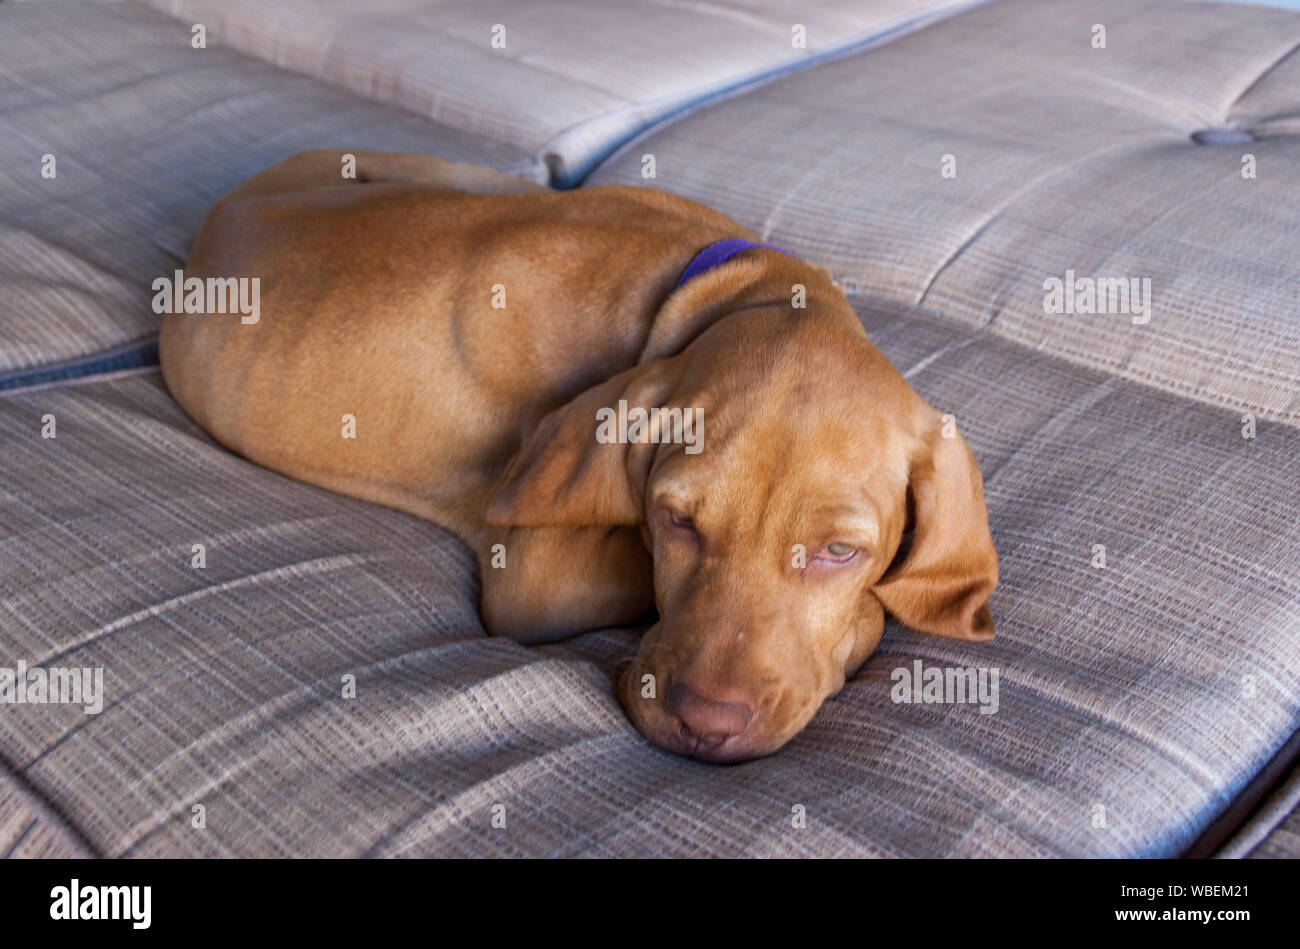 Eine kleine braune Welpen Ungarisch oder Magyar Vizsla und seine Nase, Ohren und Maul bequem schlafen und entspannen in einem braunen Couch Stockfoto